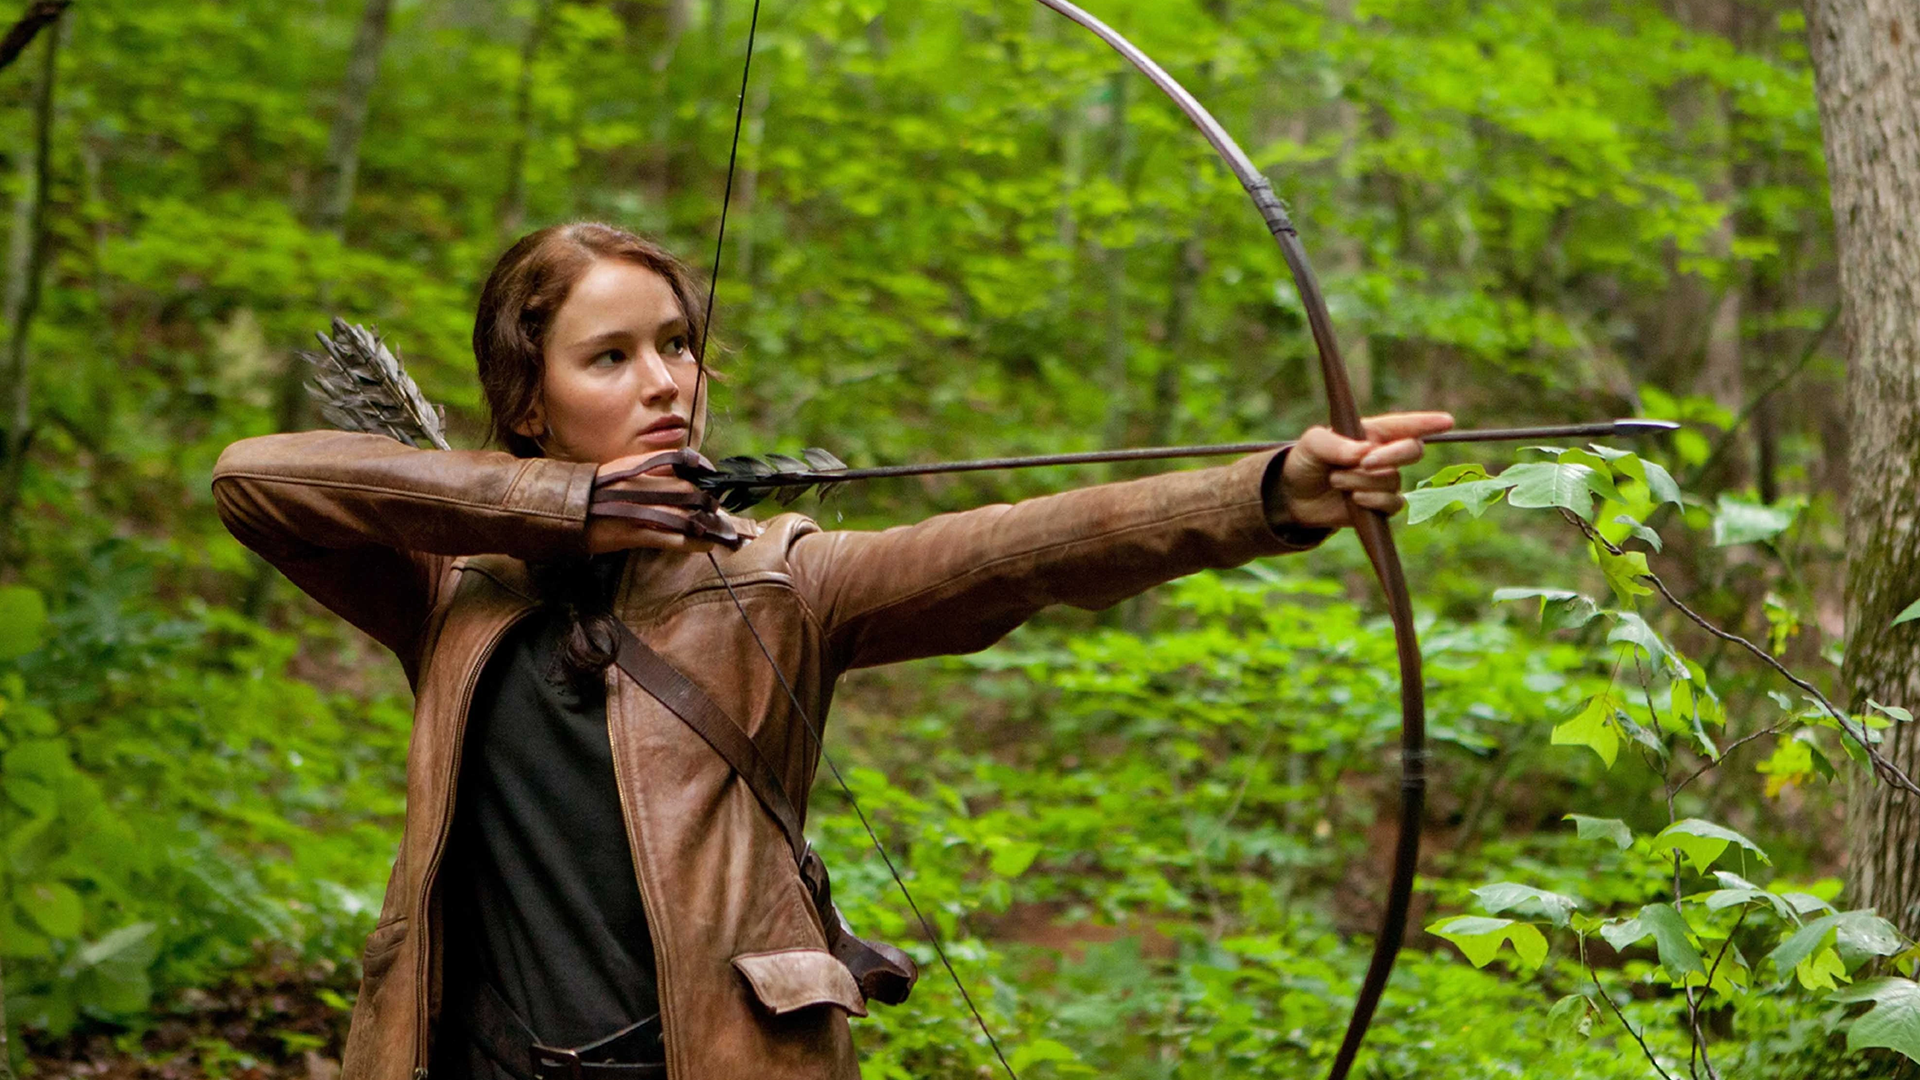 Katniss Everdeen, aiming an arrow